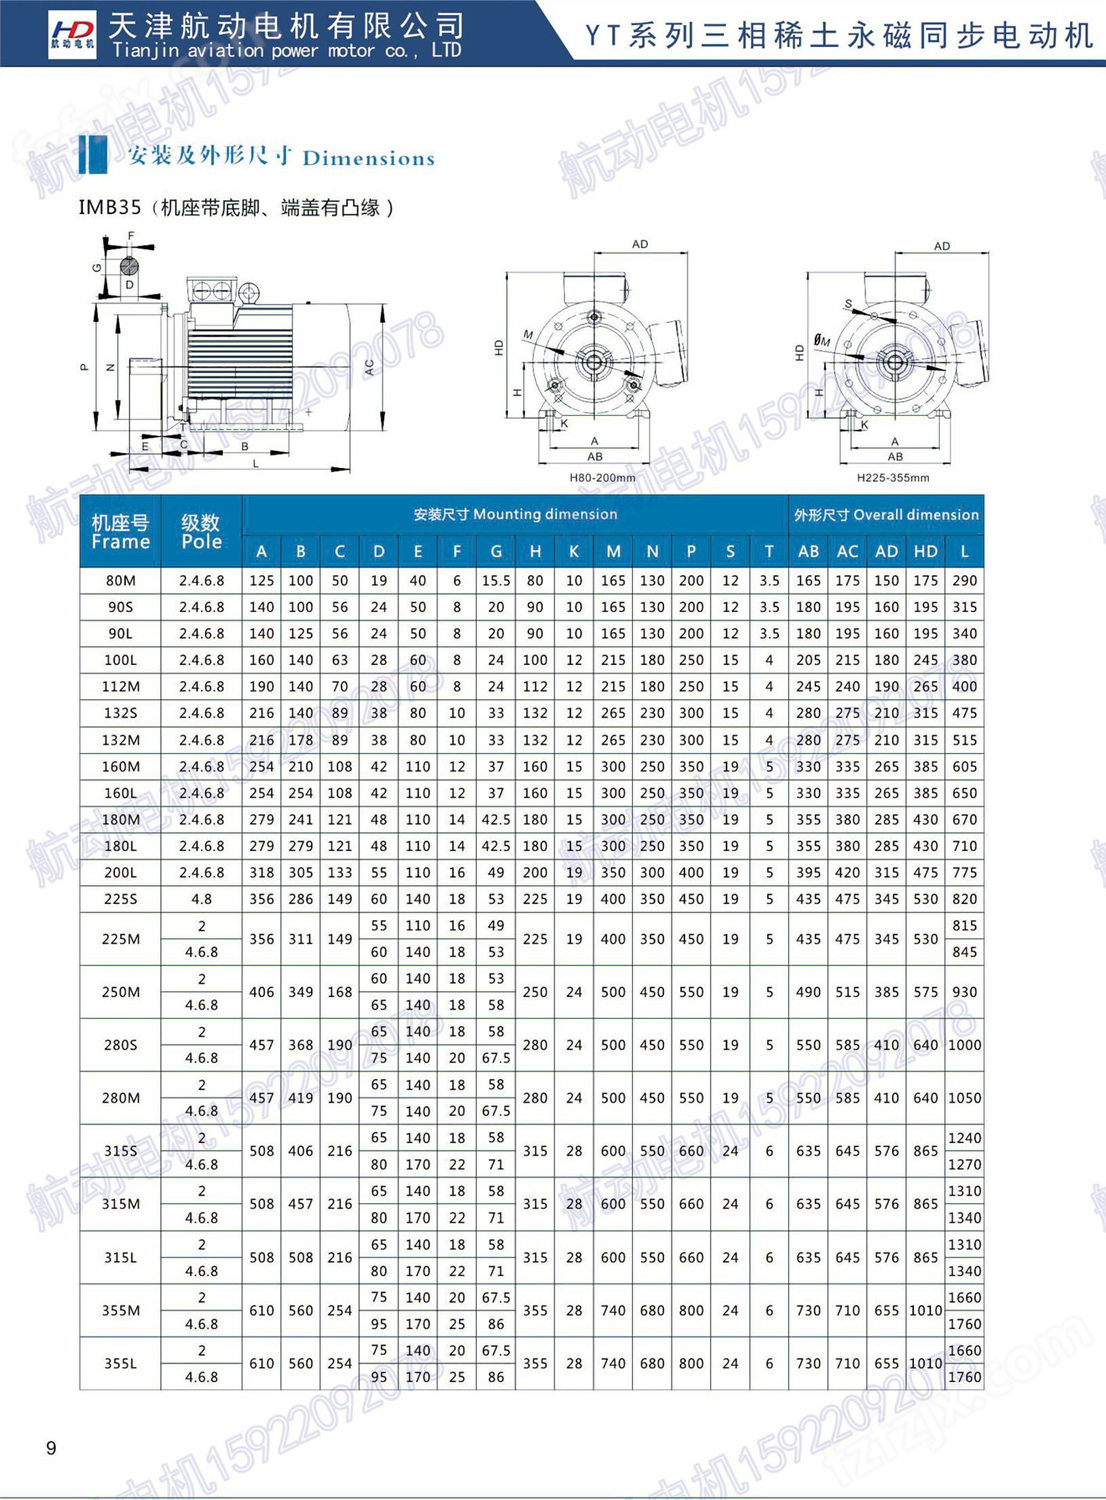 YT-132S-750/2.2KW微型永磁同步电机